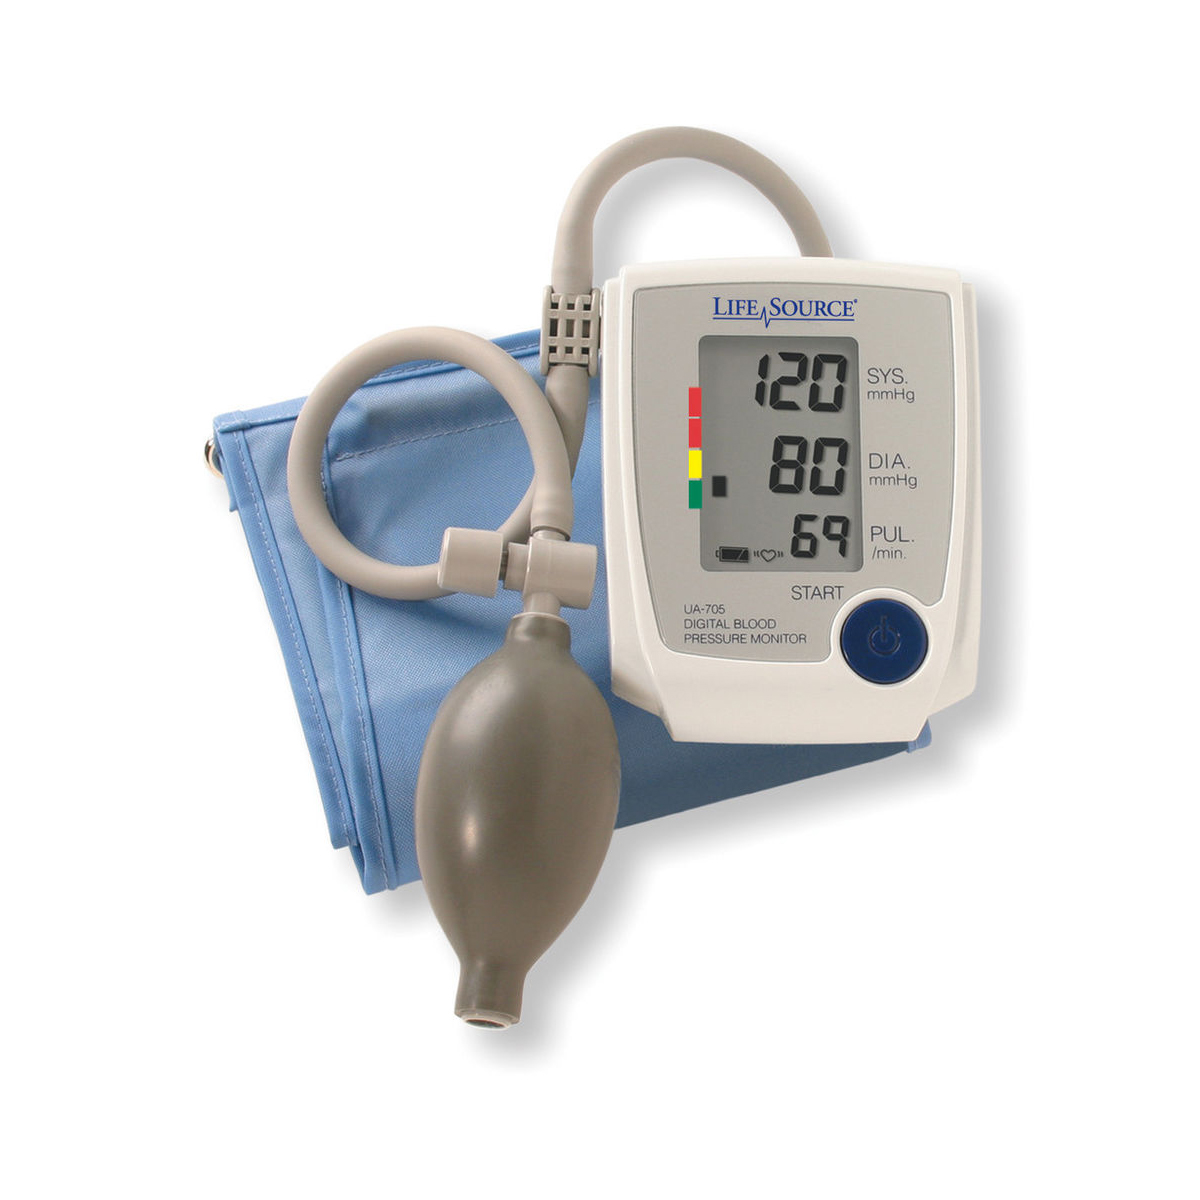 https://www.3bscientific.com/thumblibrary/W64601L/W64601L_01_1200_1200_Advanced-Manual-Inflate-Large-Cuff-Blood-Pressure-Monitor.jpg